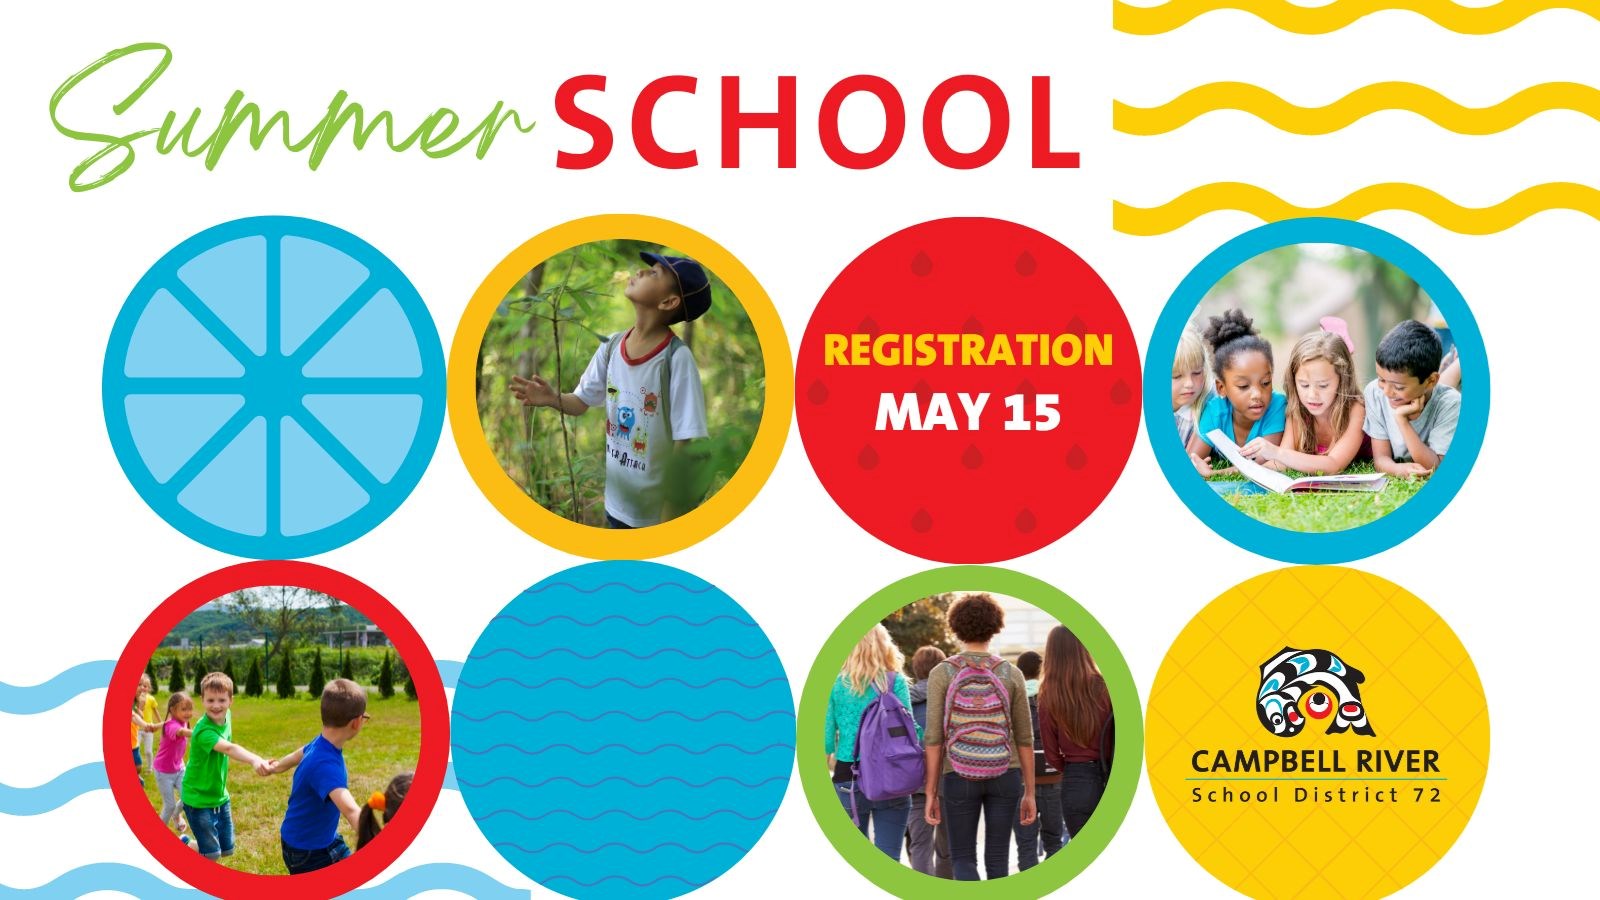 Summer School Registration Opens May 15